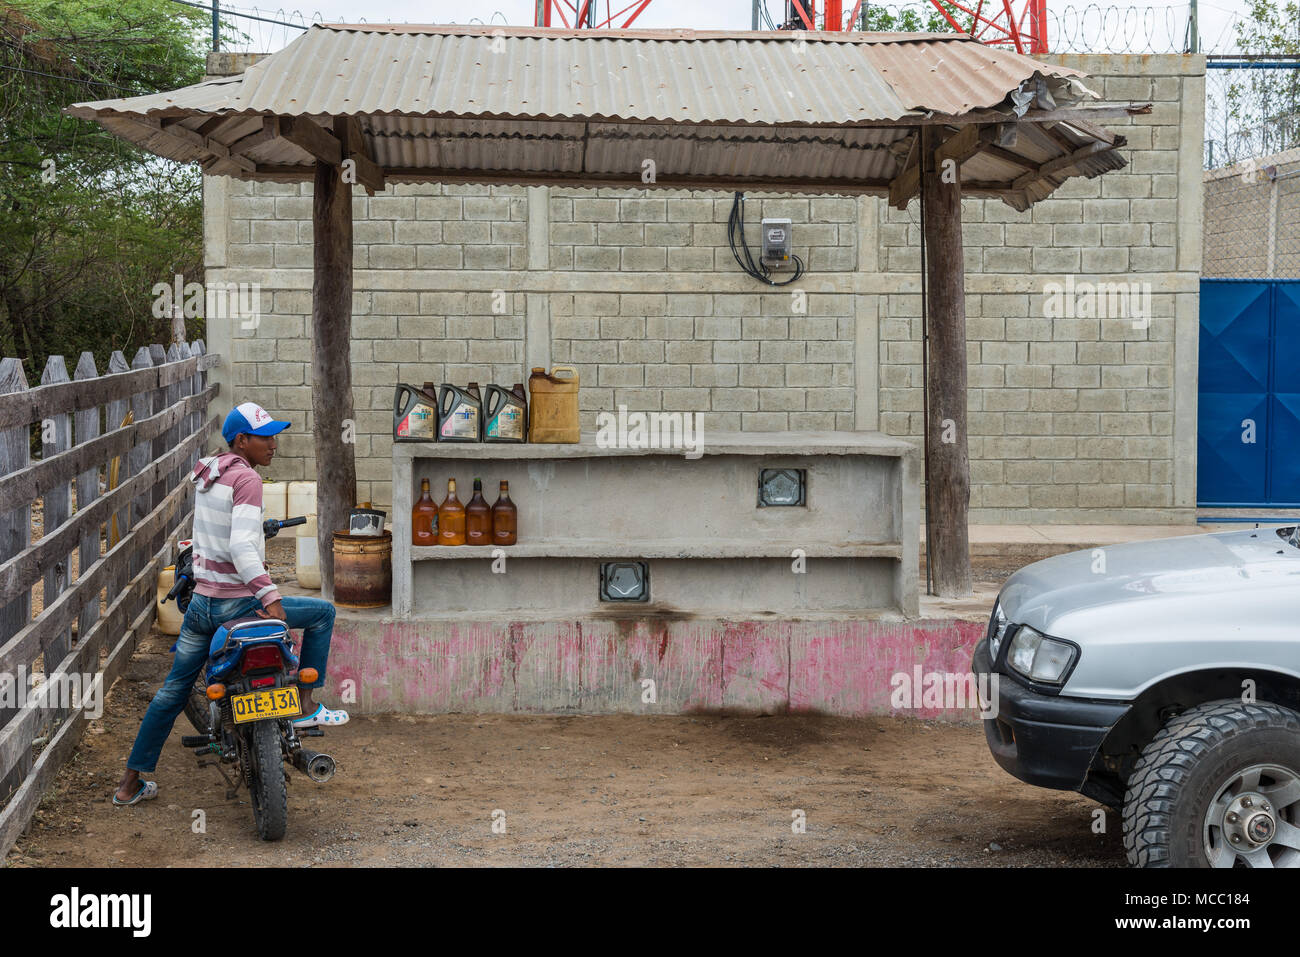 Un uomo sulla sua motocicletta in corrispondenza di una zona rurale petro station. La Colombia, Sud America. Foto Stock